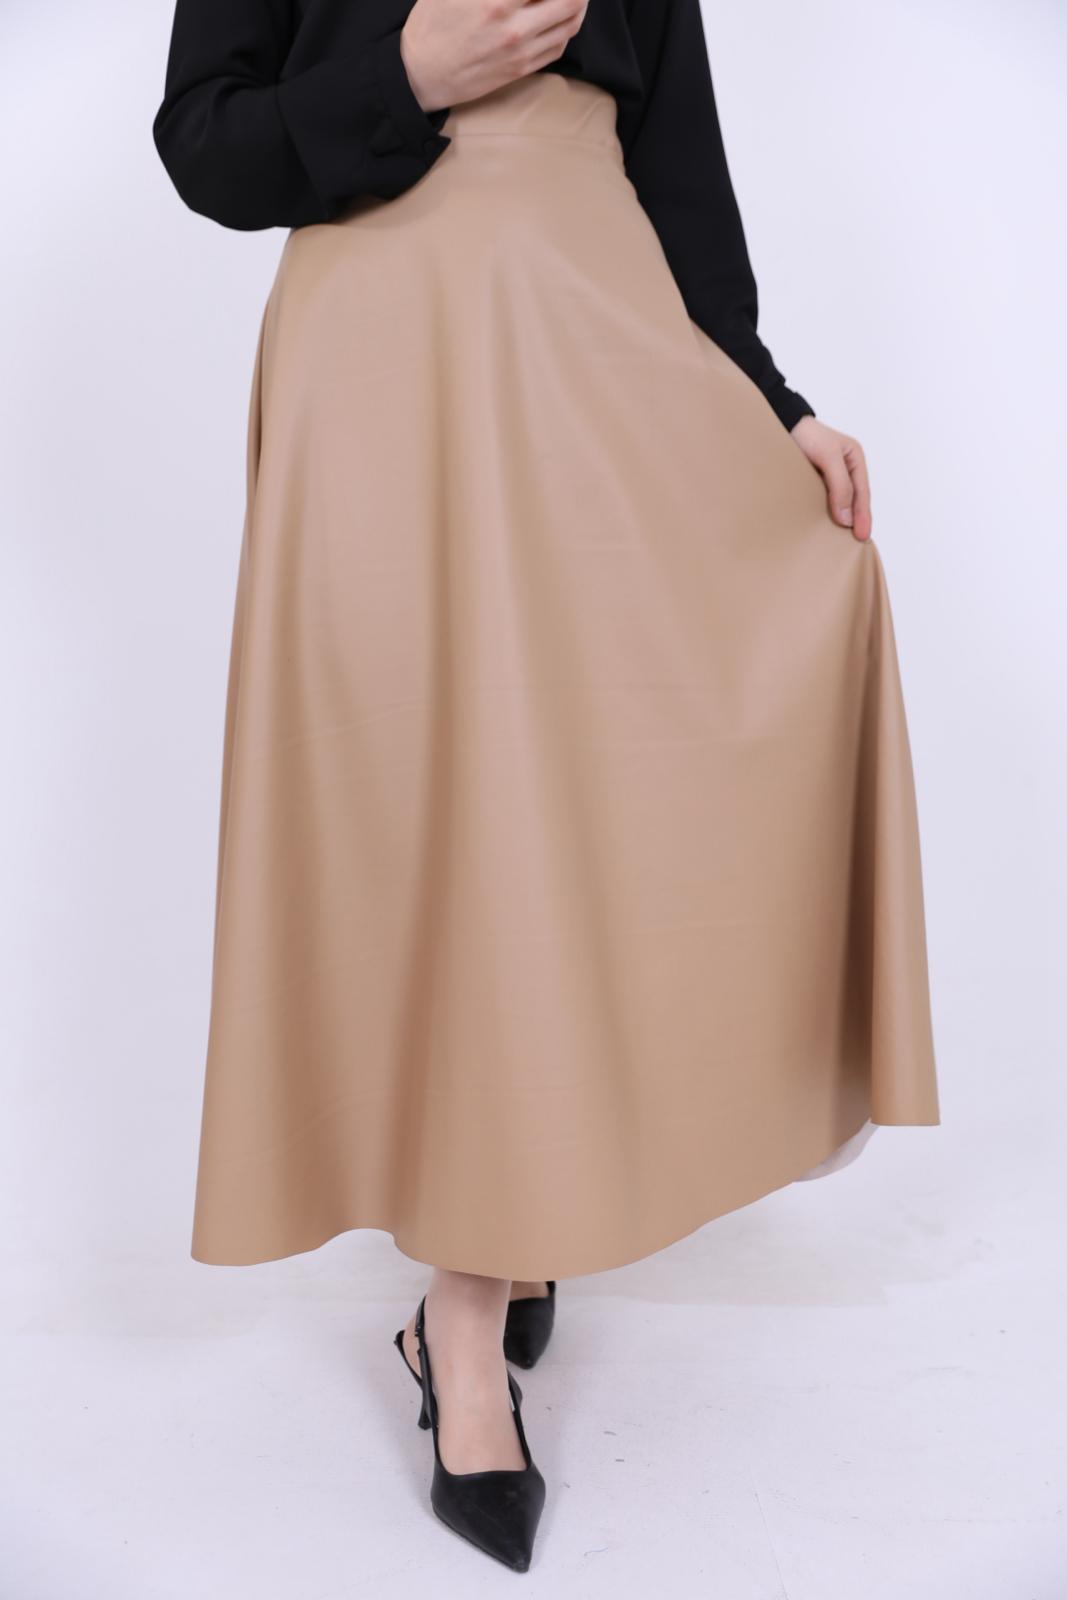 Kiloş Leather Skirt Beige